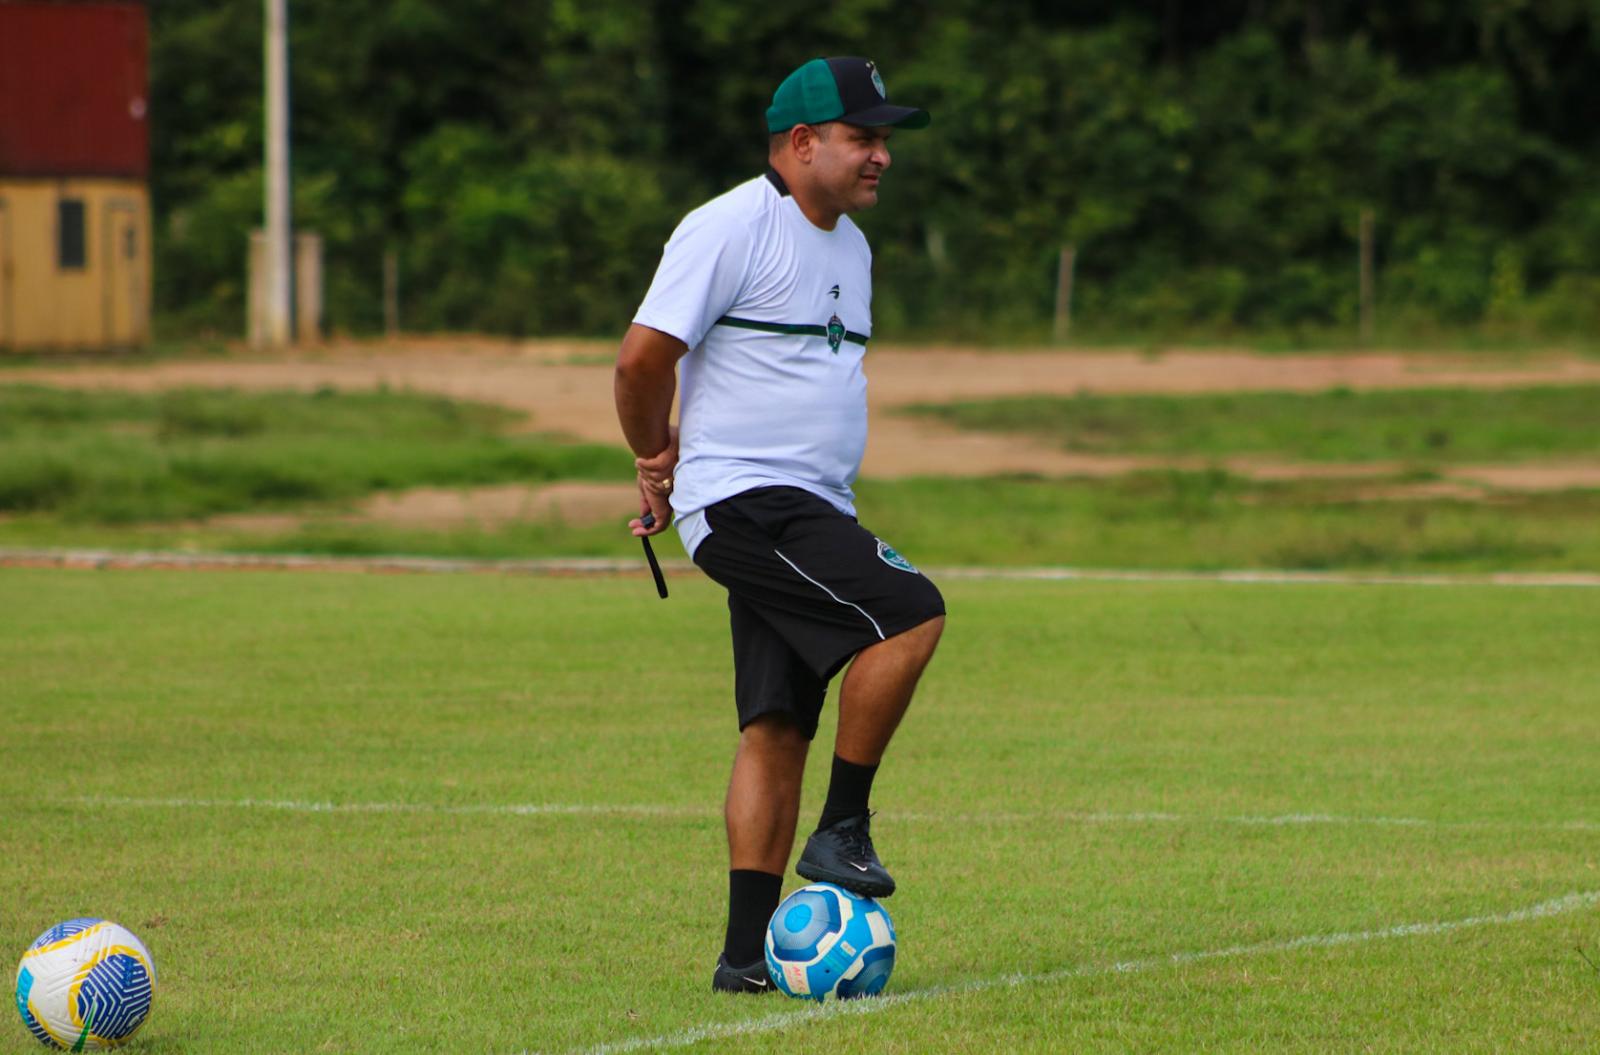 Serviço de jogo: Manaus FC vs São Raimundo 